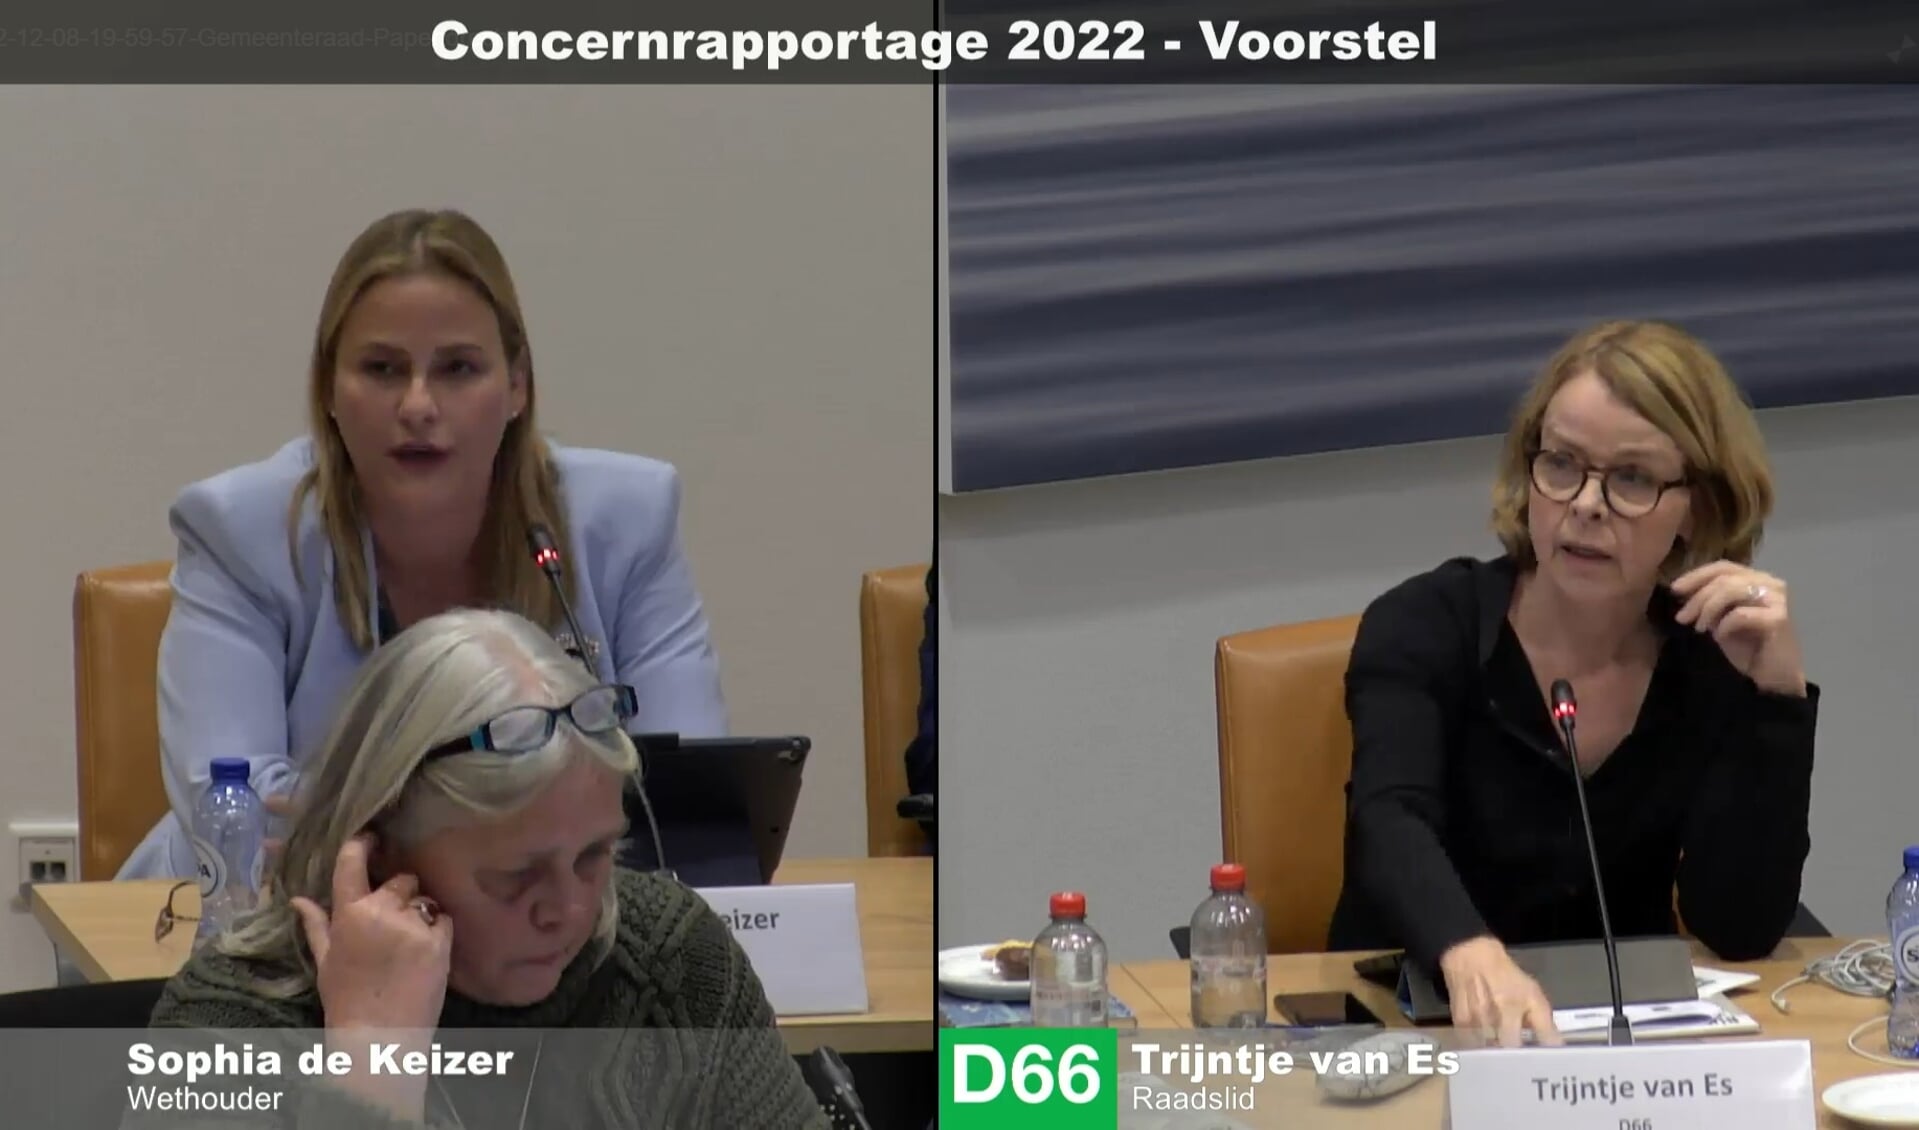 • Wethouder Sophia de Keizer (links) en Trijntje van Es van D66 op een screenshot van de vergadering.